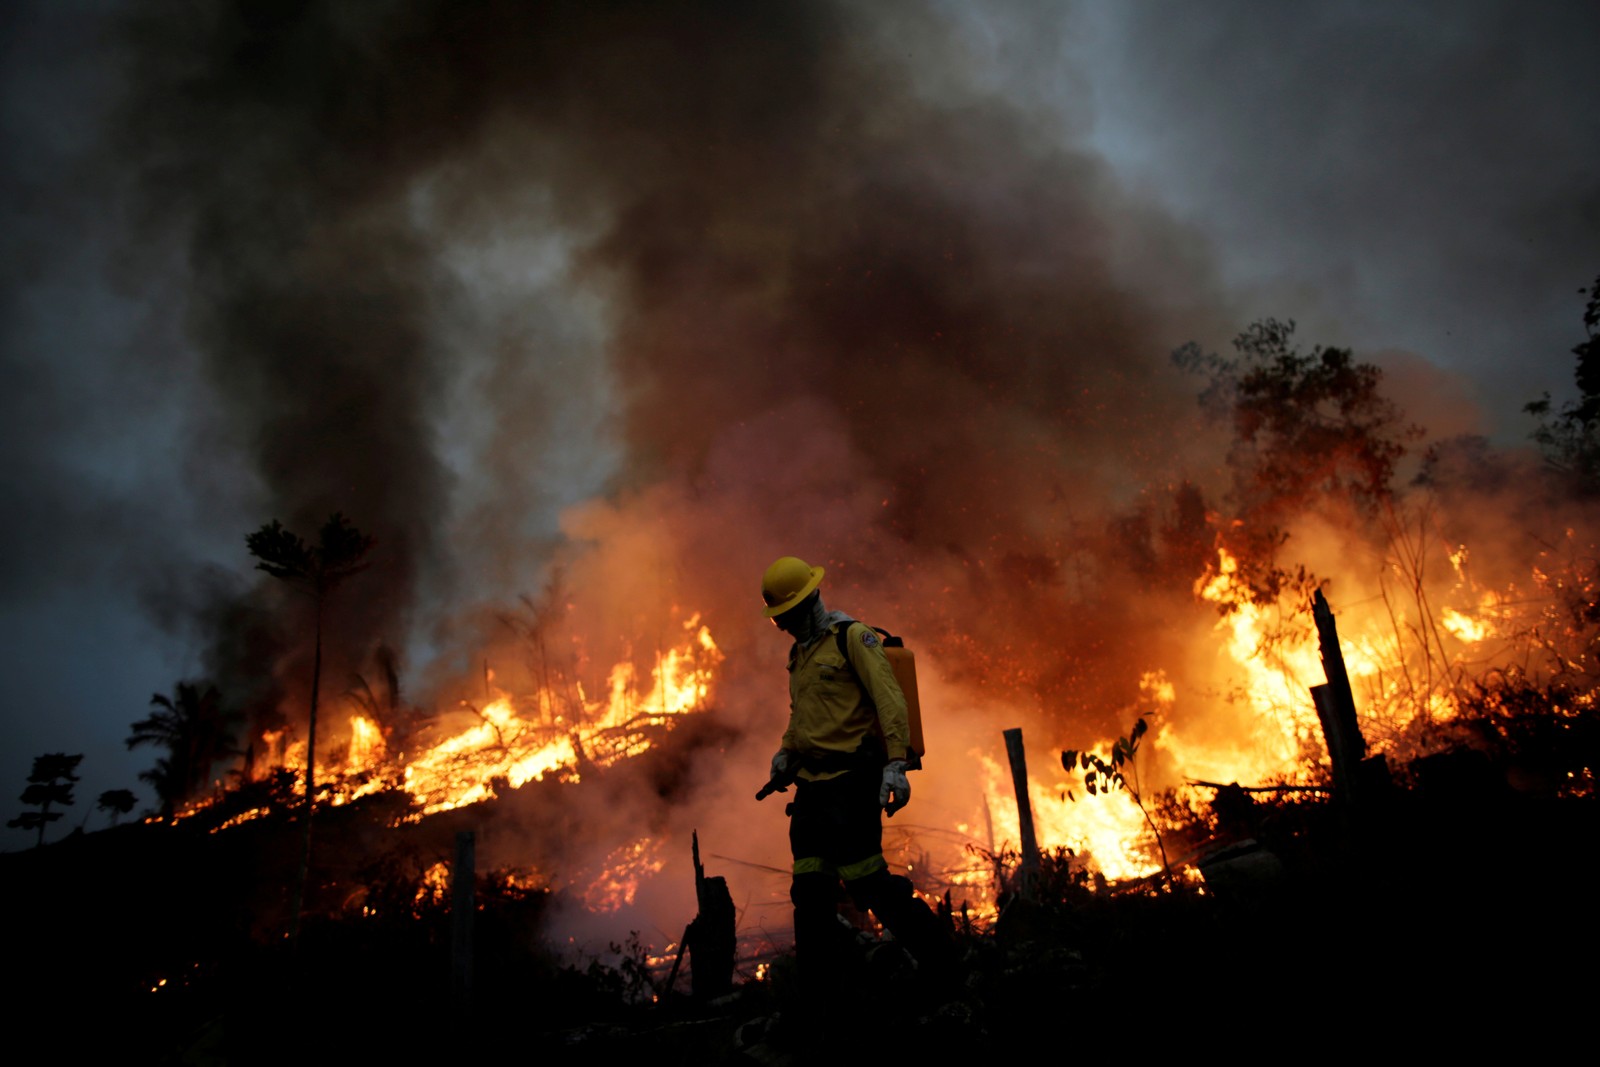 Membro da brigada de incêndio do Instituto Brasileiro do Meio Ambiente e dos Recursos Naturais Renováveis (Ibama) tenta controlar um incêndio em uma área da floresta amazônica, em Apuí, no AmazonasREUTERS